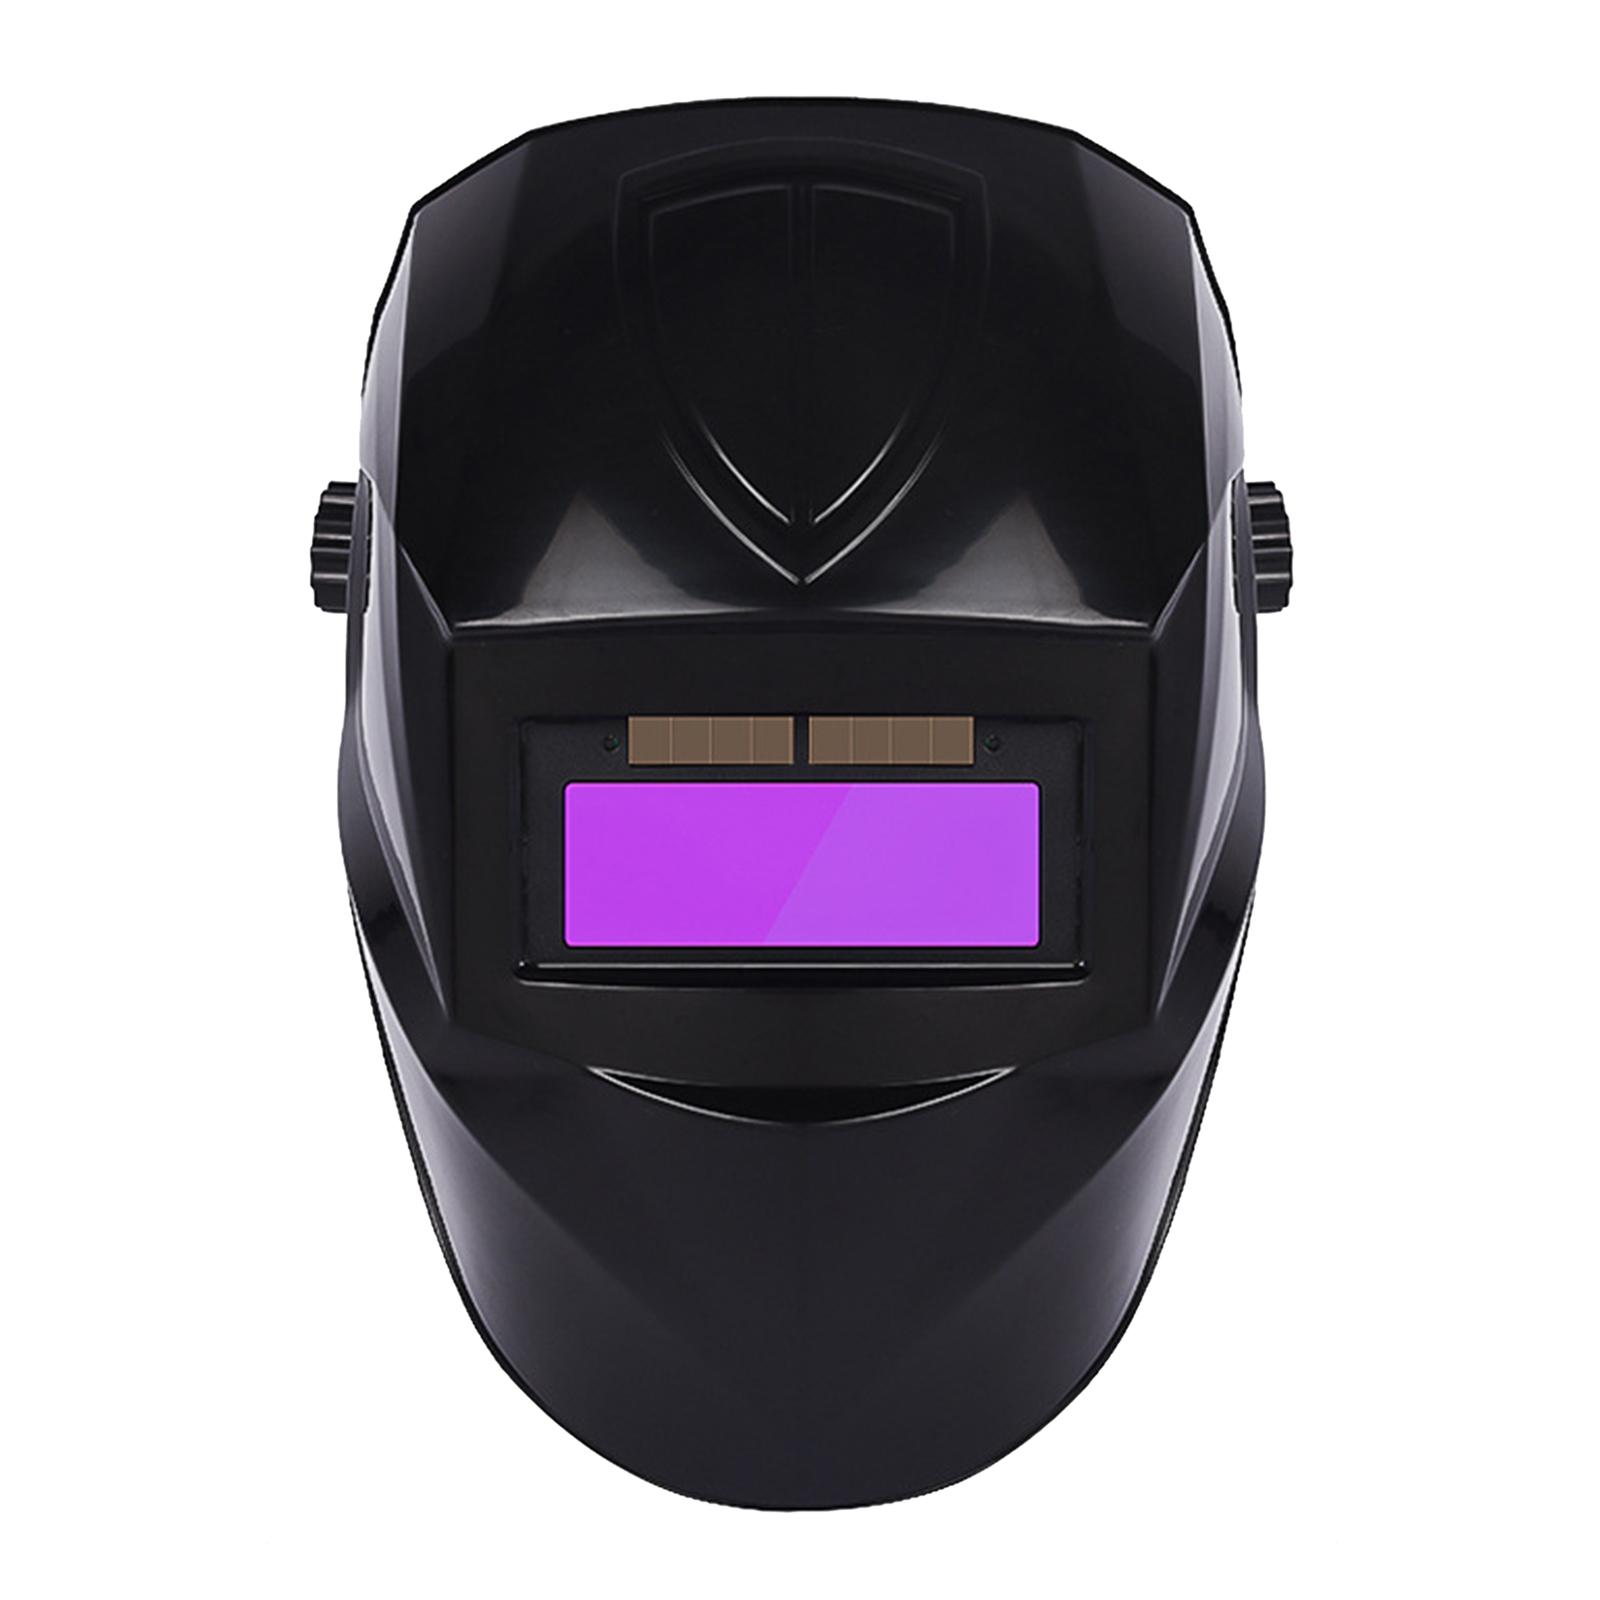 2xAuto Darkening Welding Helmet Mask Hood for Grinding ARC MIG TIG Welding